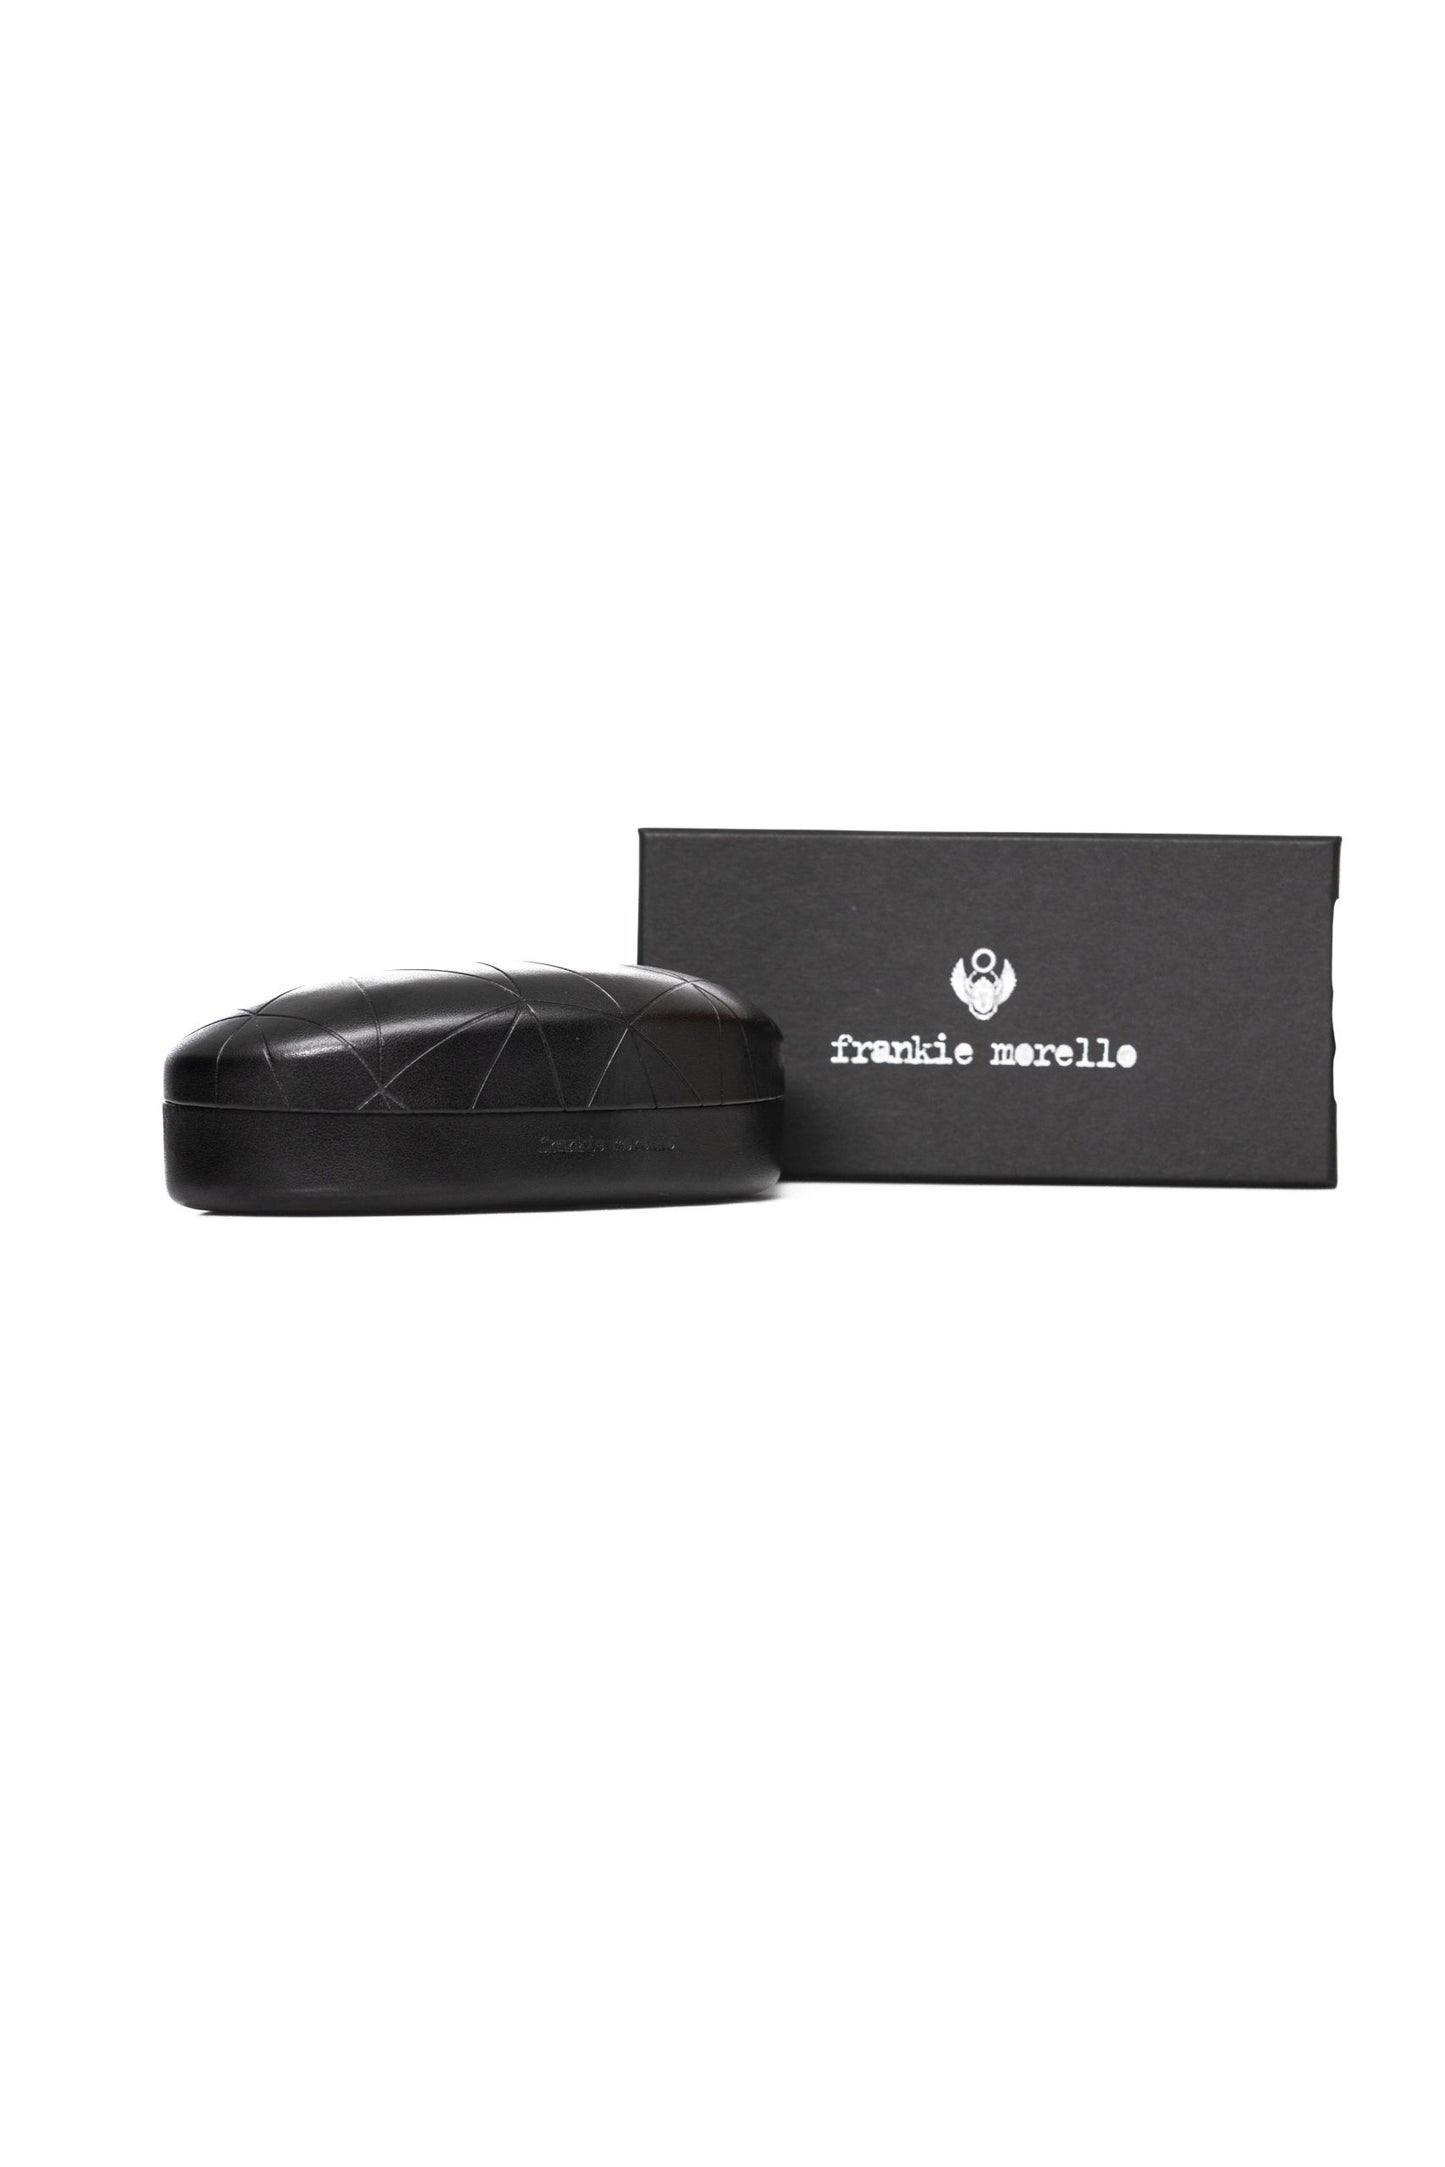 Frankie Morello FRMO-22138 Silver Metallic Fibre Sunglasses